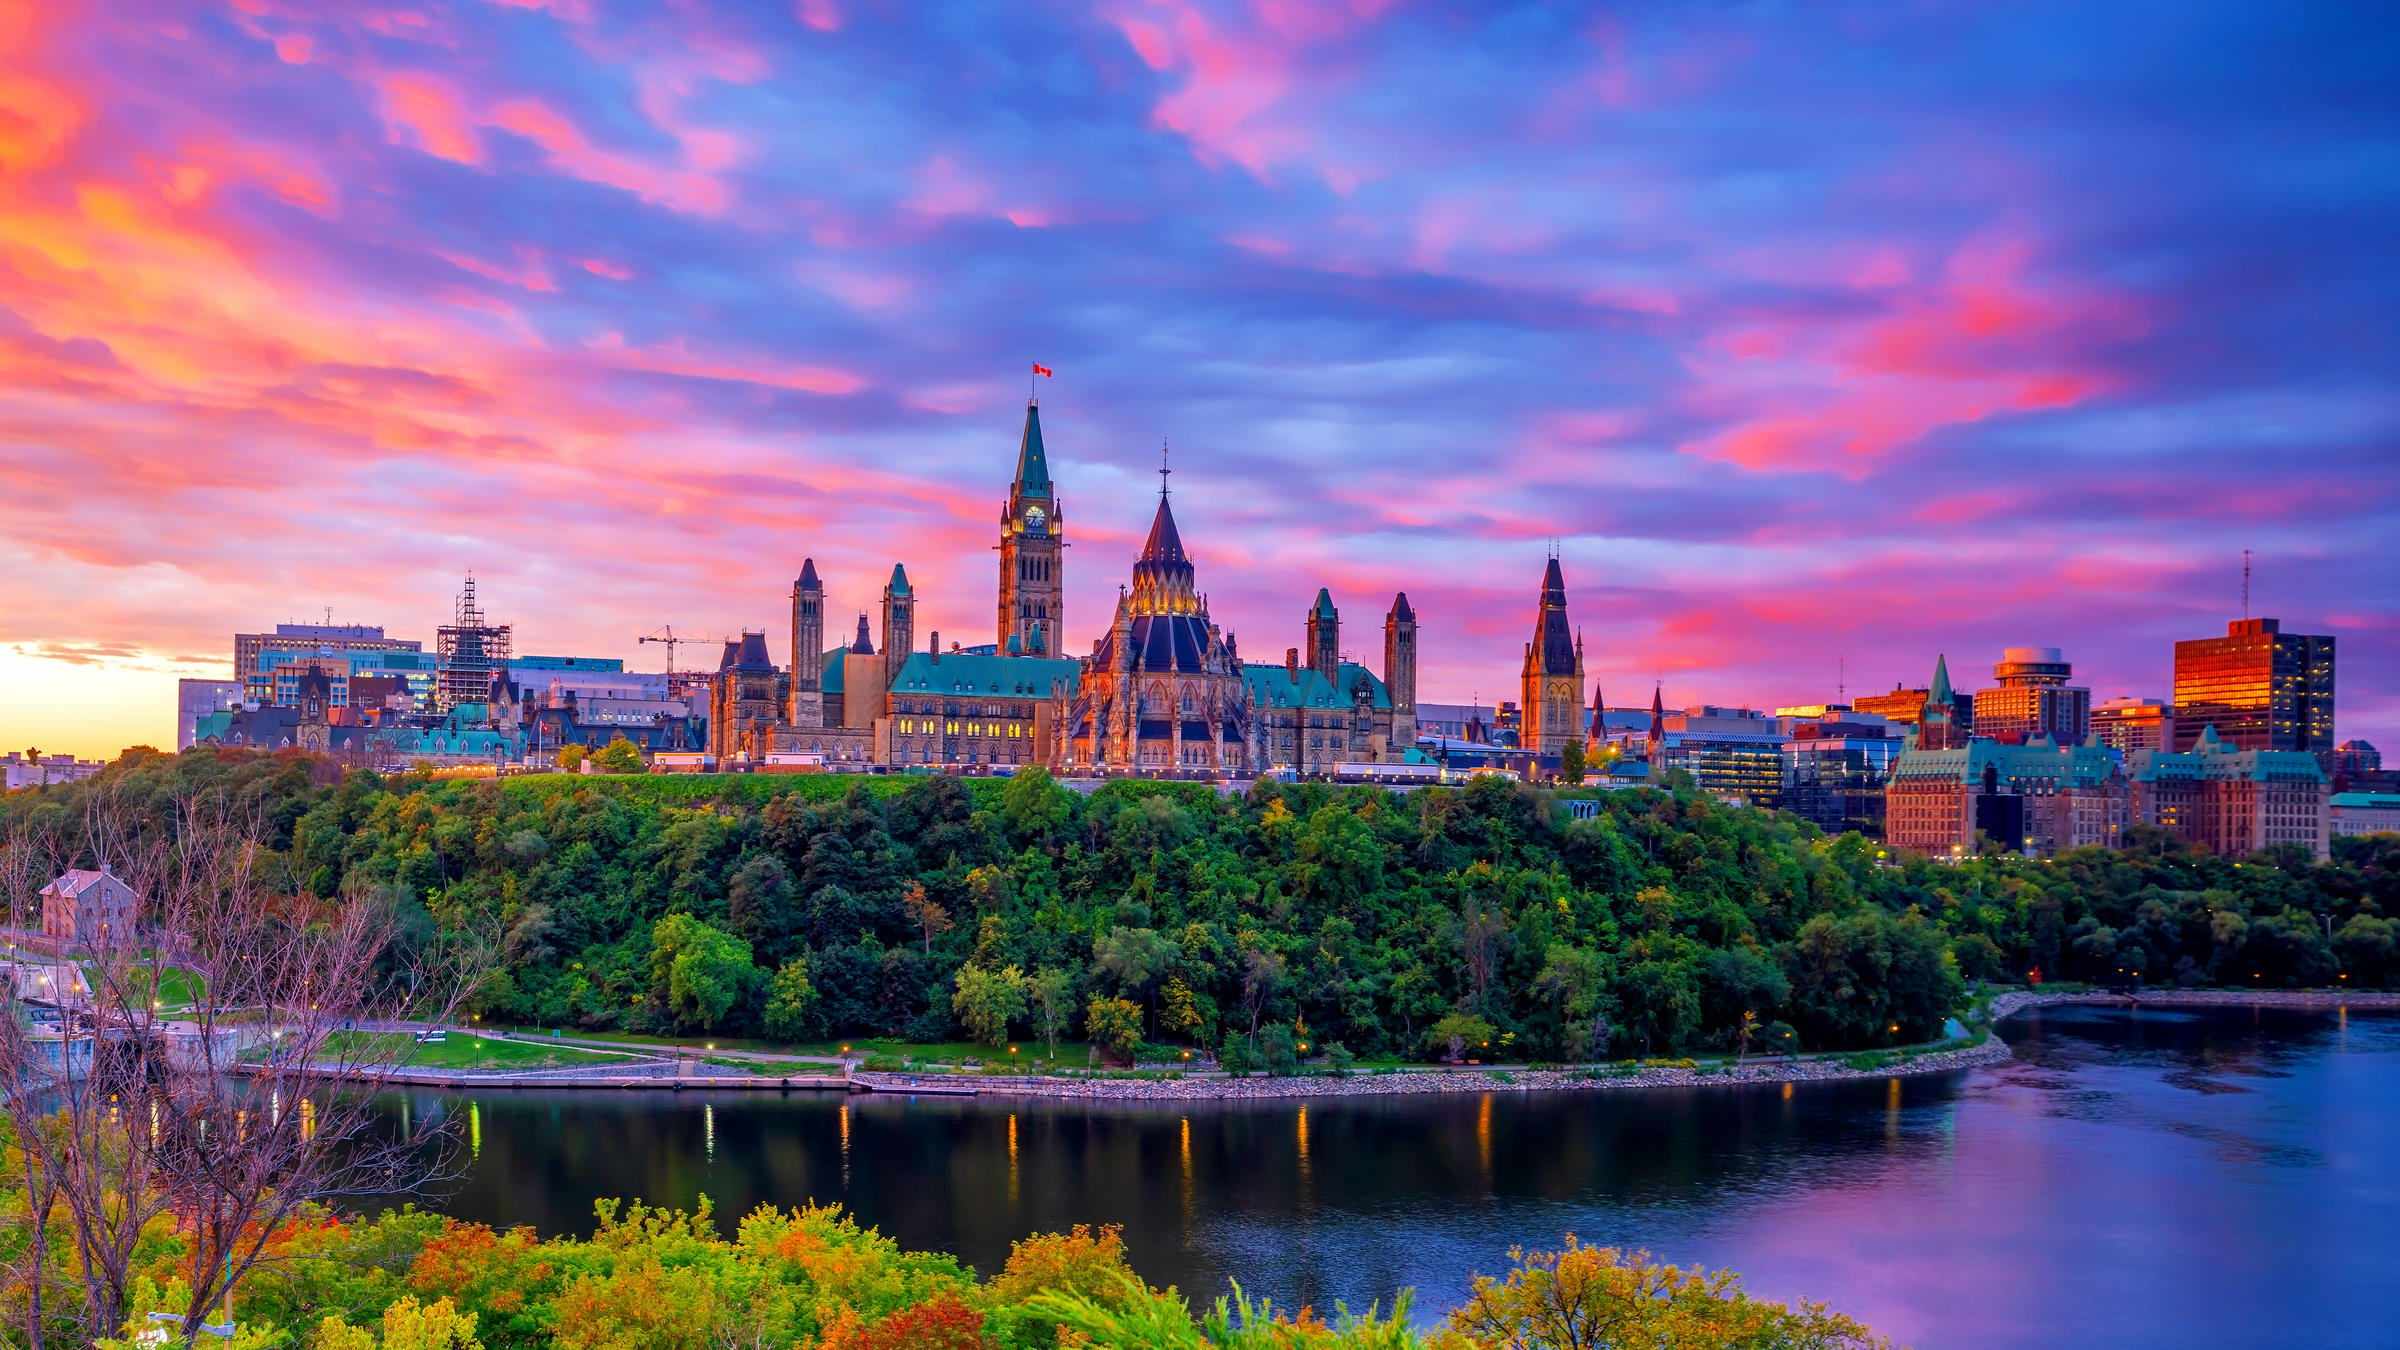 The Ottawa's Parliament Hill